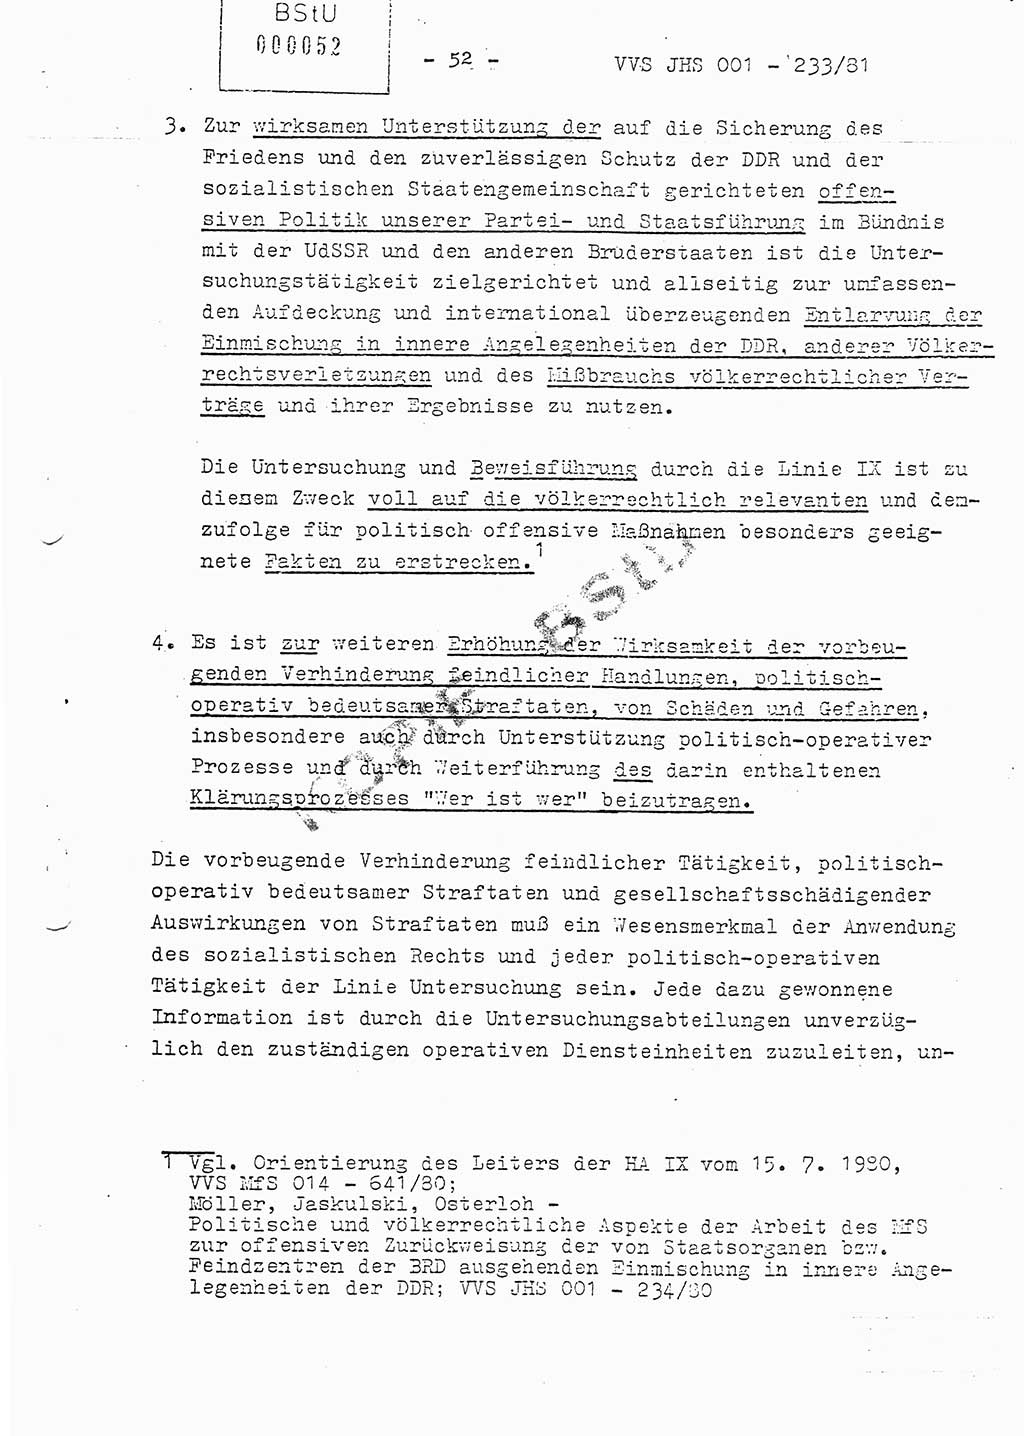 Dissertation Oberstleutnant Horst Zank (JHS), Oberstleutnant Dr. Karl-Heinz Knoblauch (JHS), Oberstleutnant Gustav-Adolf Kowalewski (HA Ⅸ), Oberstleutnant Wolfgang Plötner (HA Ⅸ), Ministerium für Staatssicherheit (MfS) [Deutsche Demokratische Republik (DDR)], Juristische Hochschule (JHS), Vertrauliche Verschlußsache (VVS) o001-233/81, Potsdam 1981, Blatt 52 (Diss. MfS DDR JHS VVS o001-233/81 1981, Bl. 52)